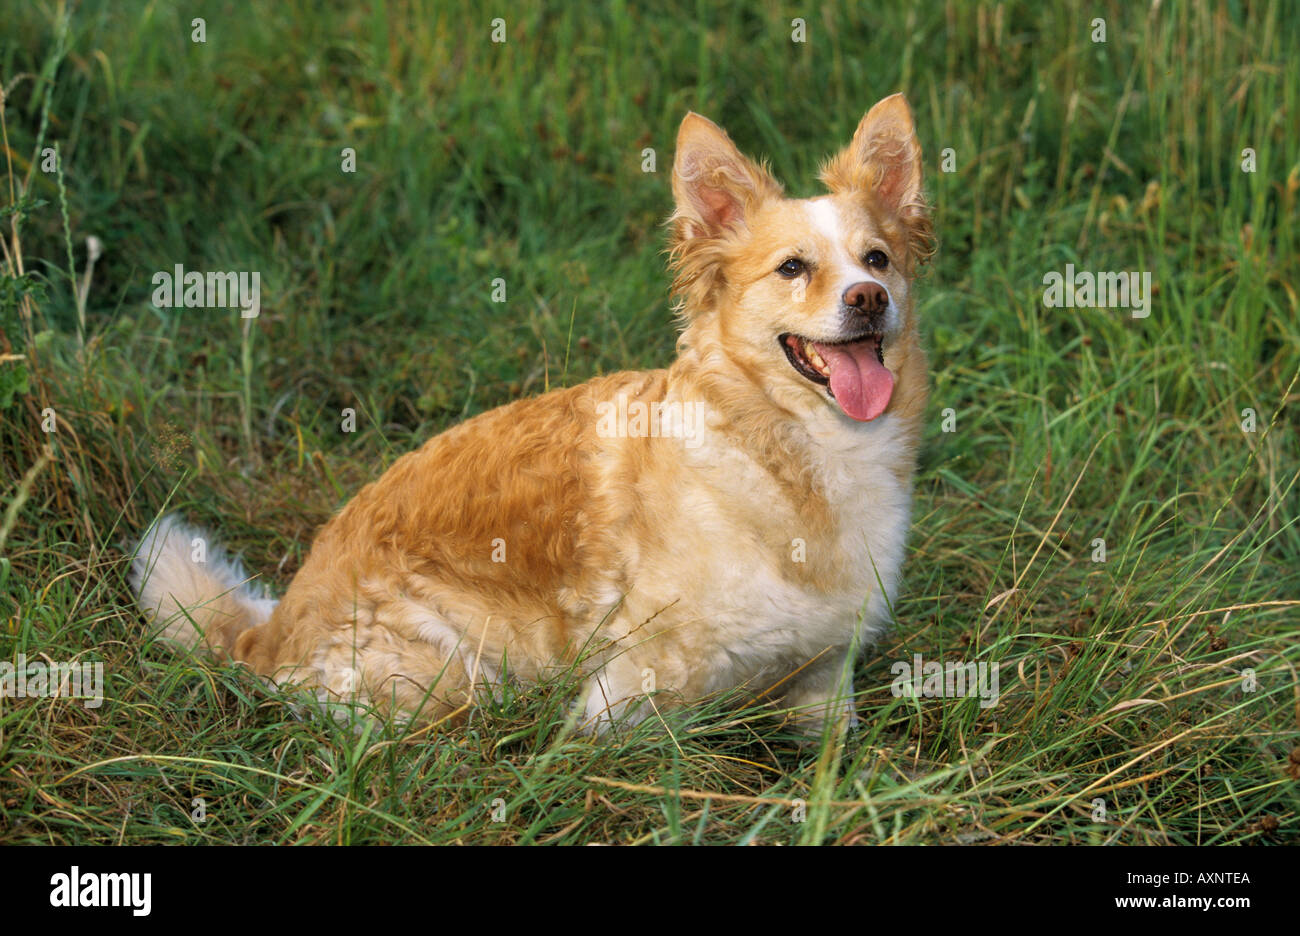 Hybrid-Hund Dackel Spitz sitzen auf der Wiese Stockfotografie - Alamy